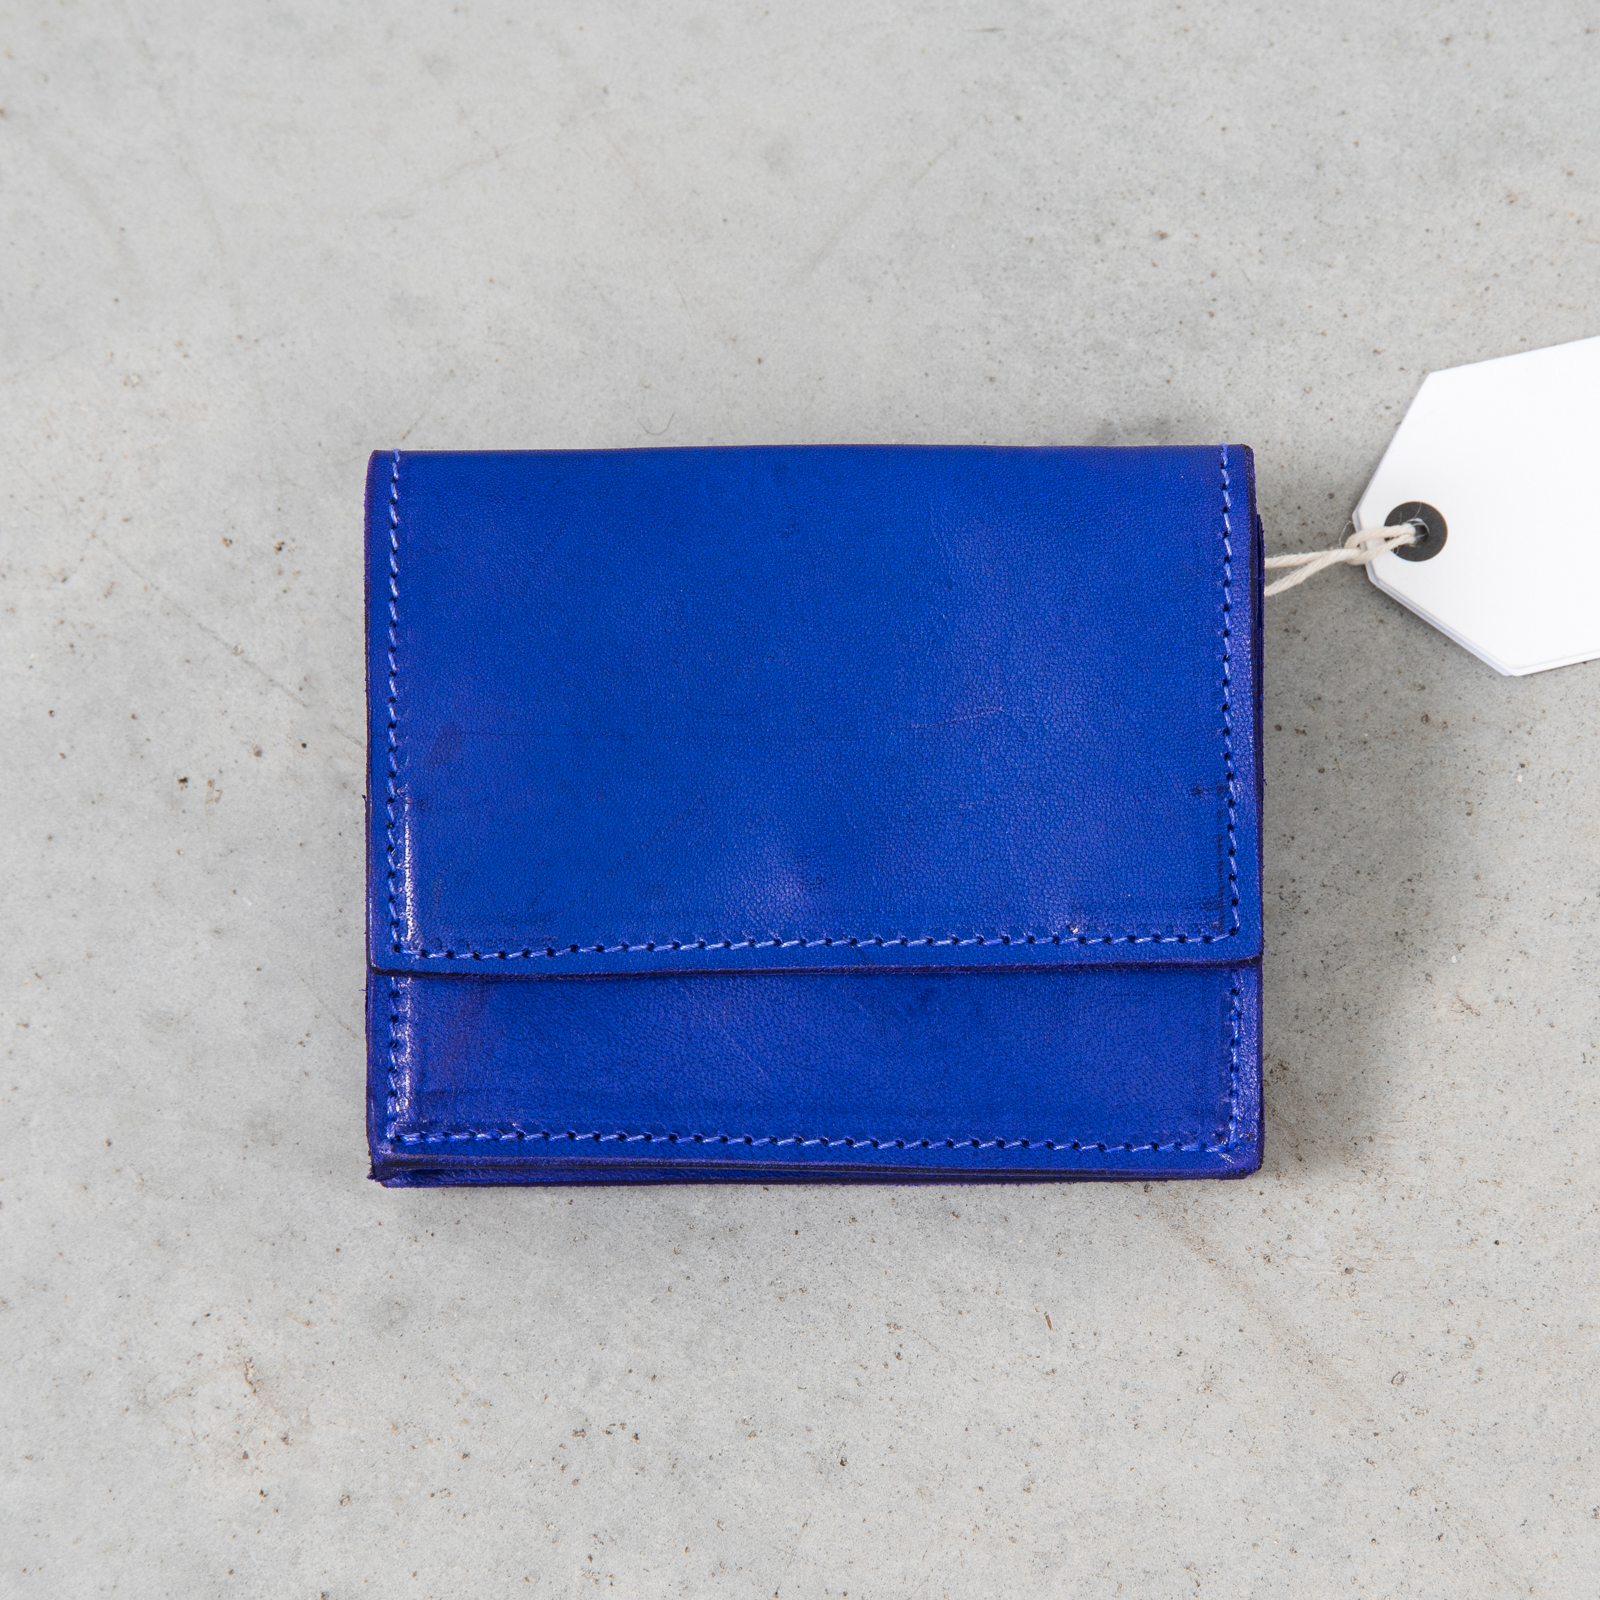 Cobalt blue bi-fold wallet with logo